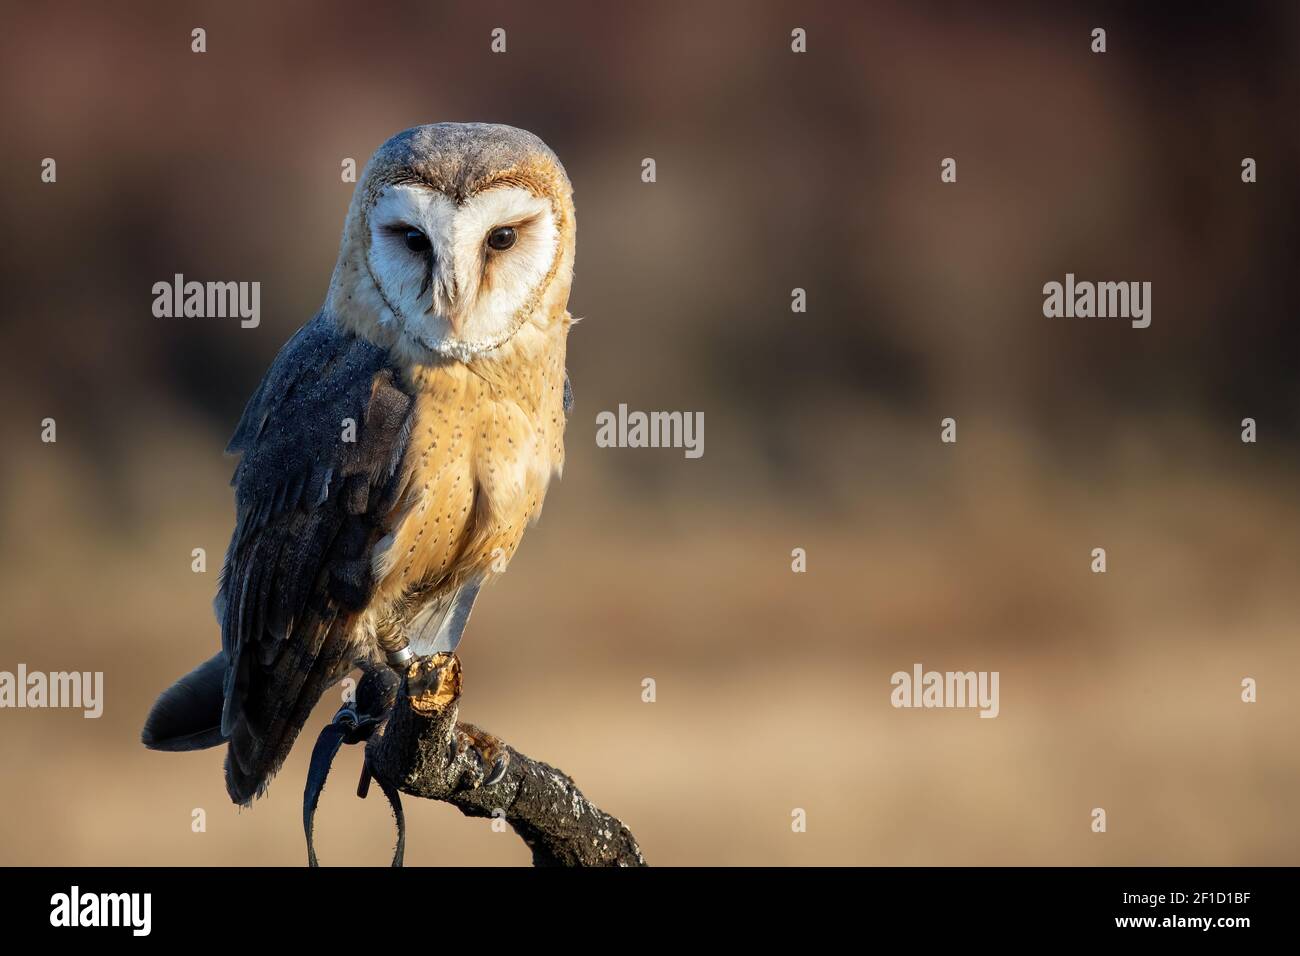 Scheune Owl sitzt auf einem toten Baum mit verschwommenem Hintergrund. Geringe Schärfentiefe. Falknerei-Thema Stockfoto